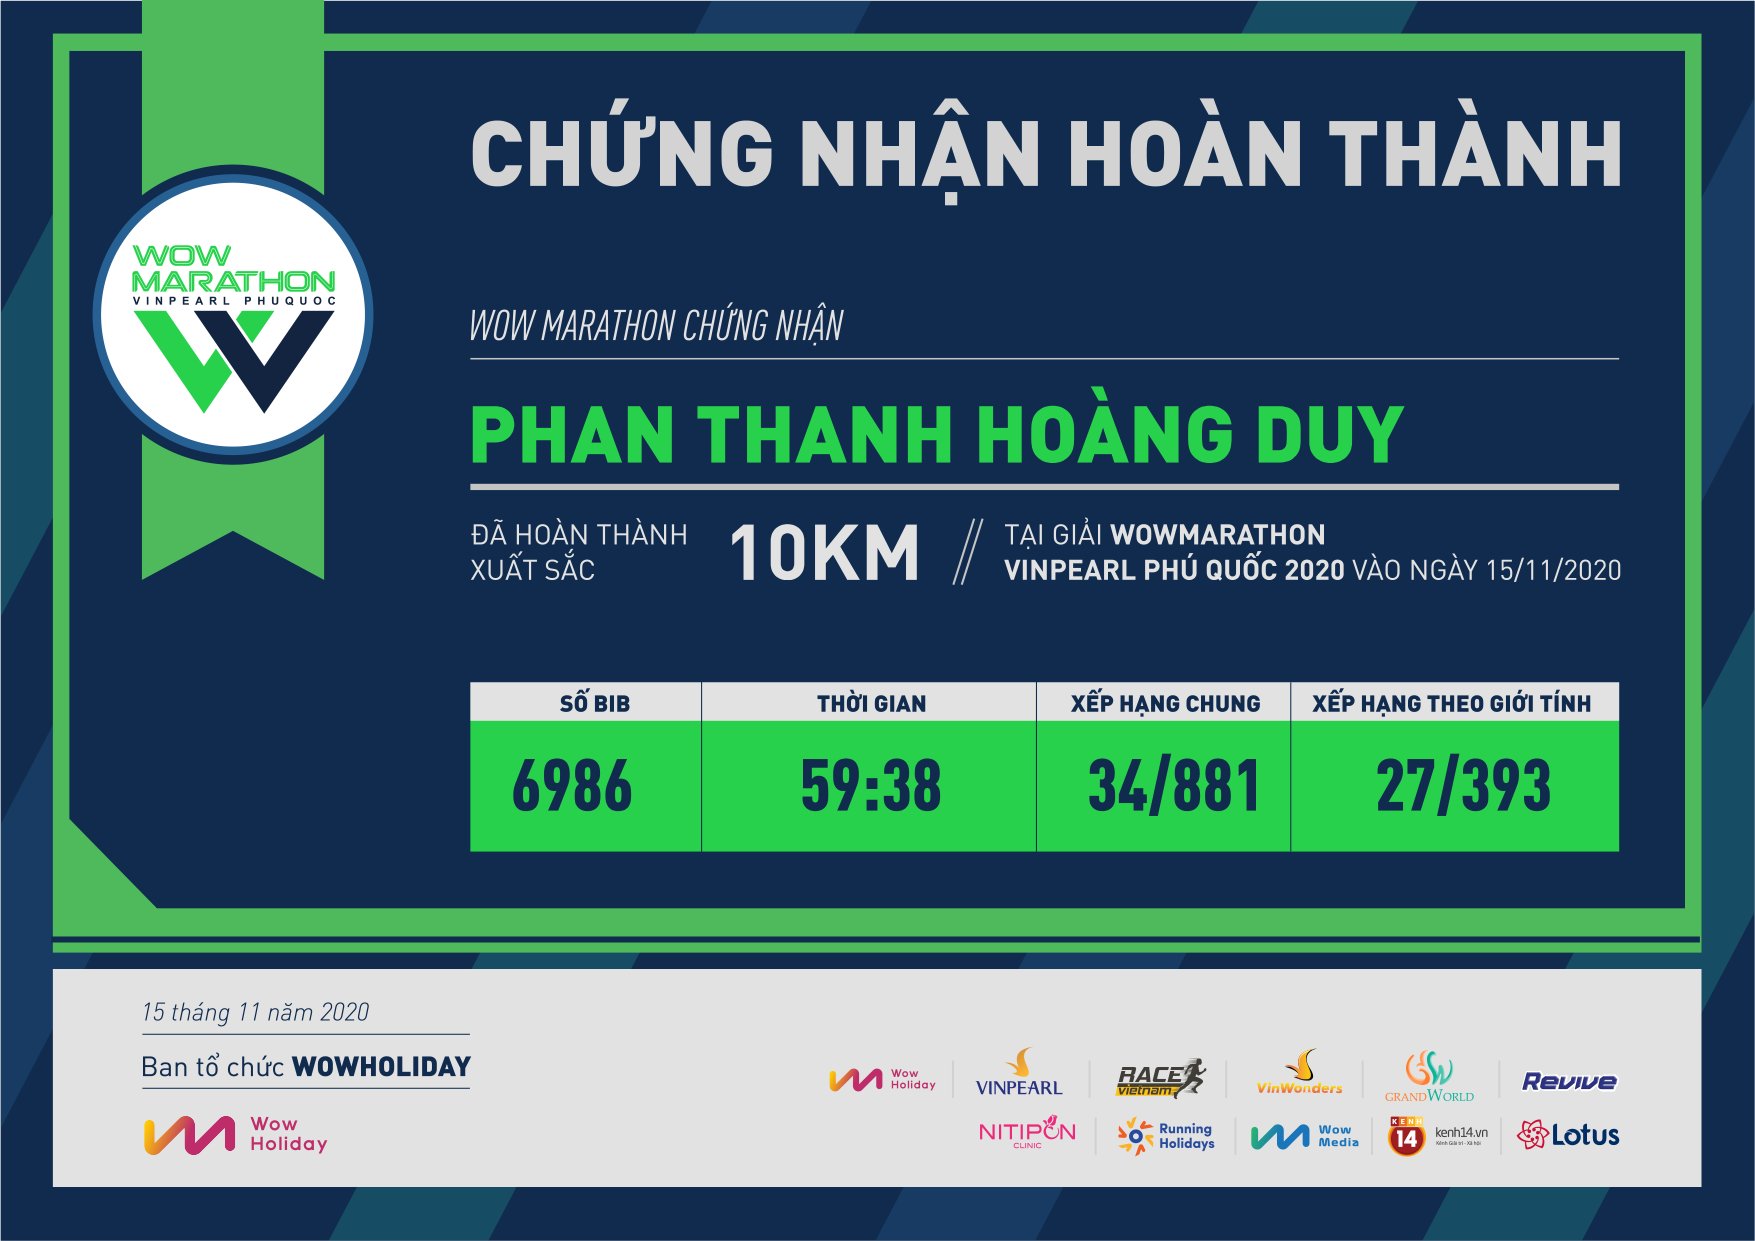 6986 - Phan Thanh Hoàng Duy